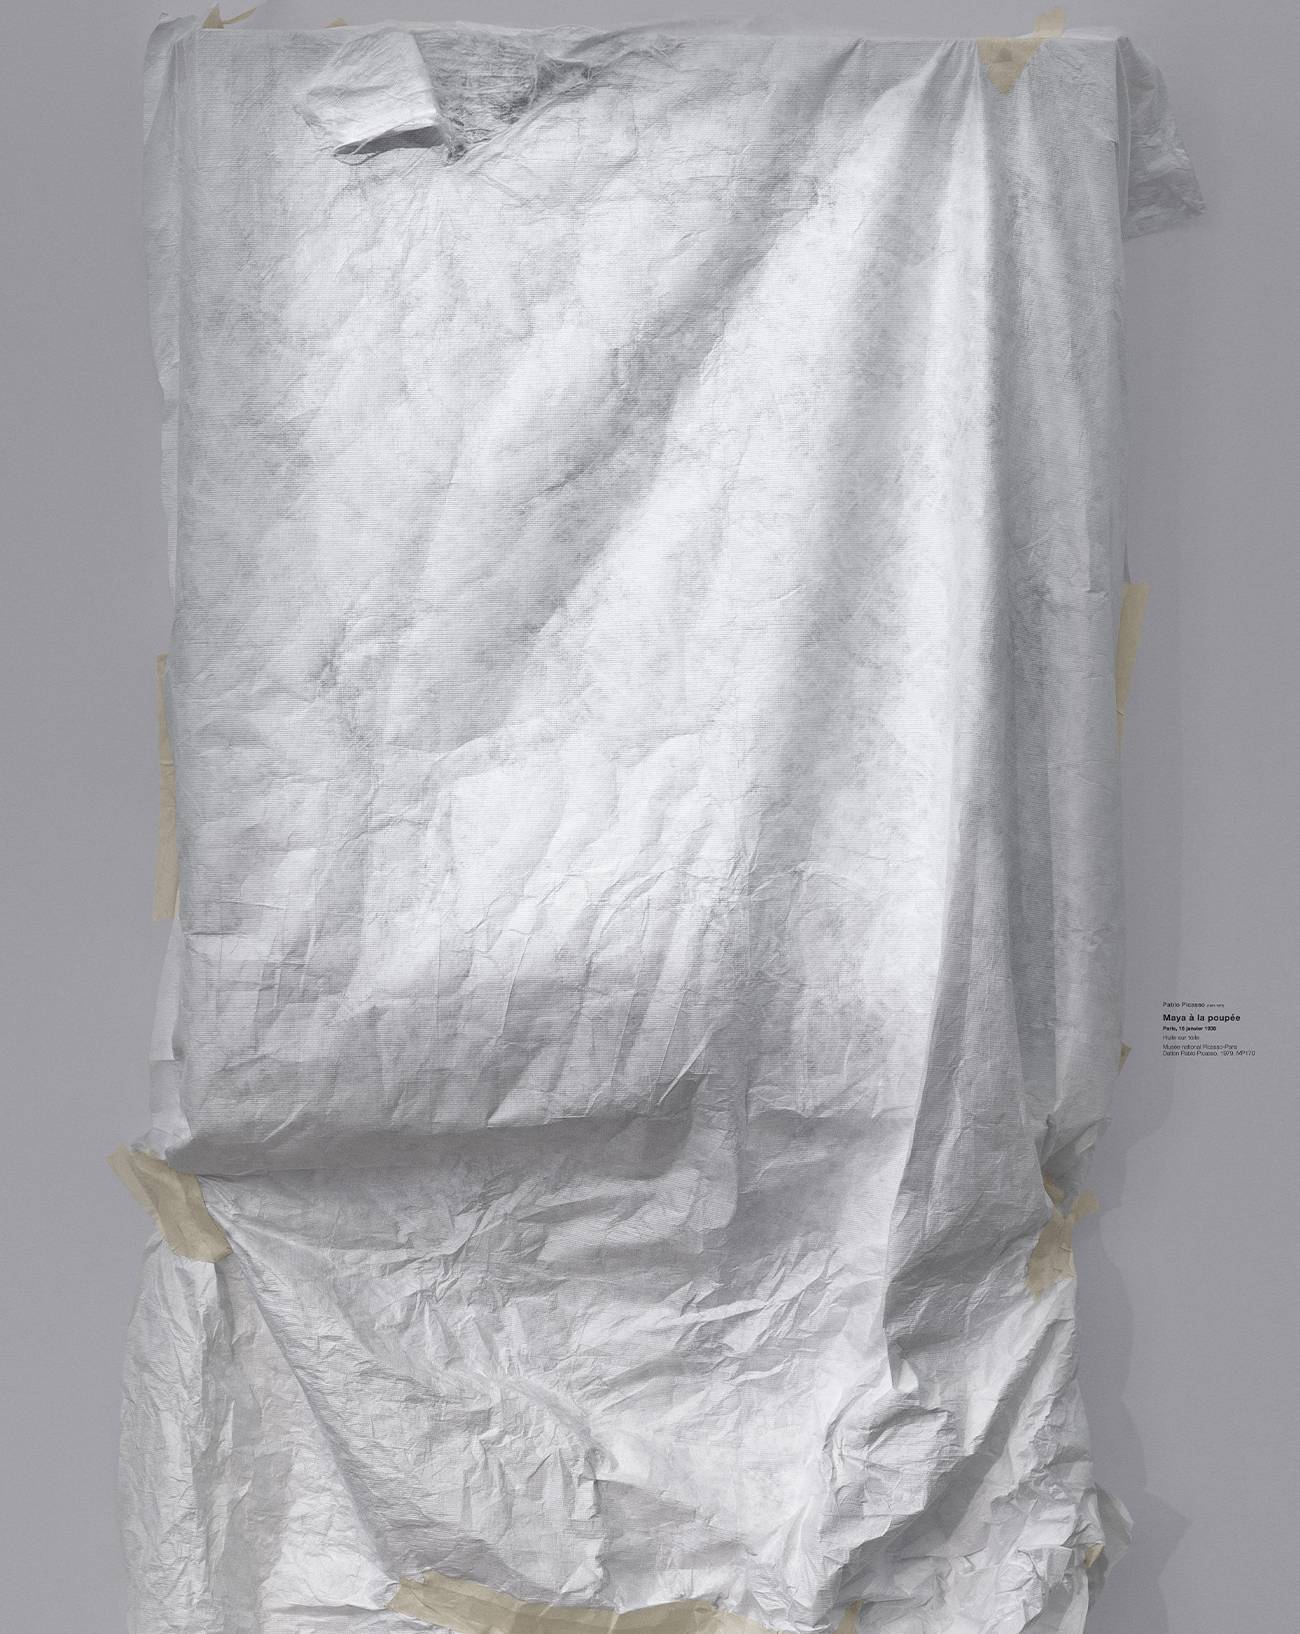 Sophie Calle, Exposition, Art contemporain, Musée Picasso